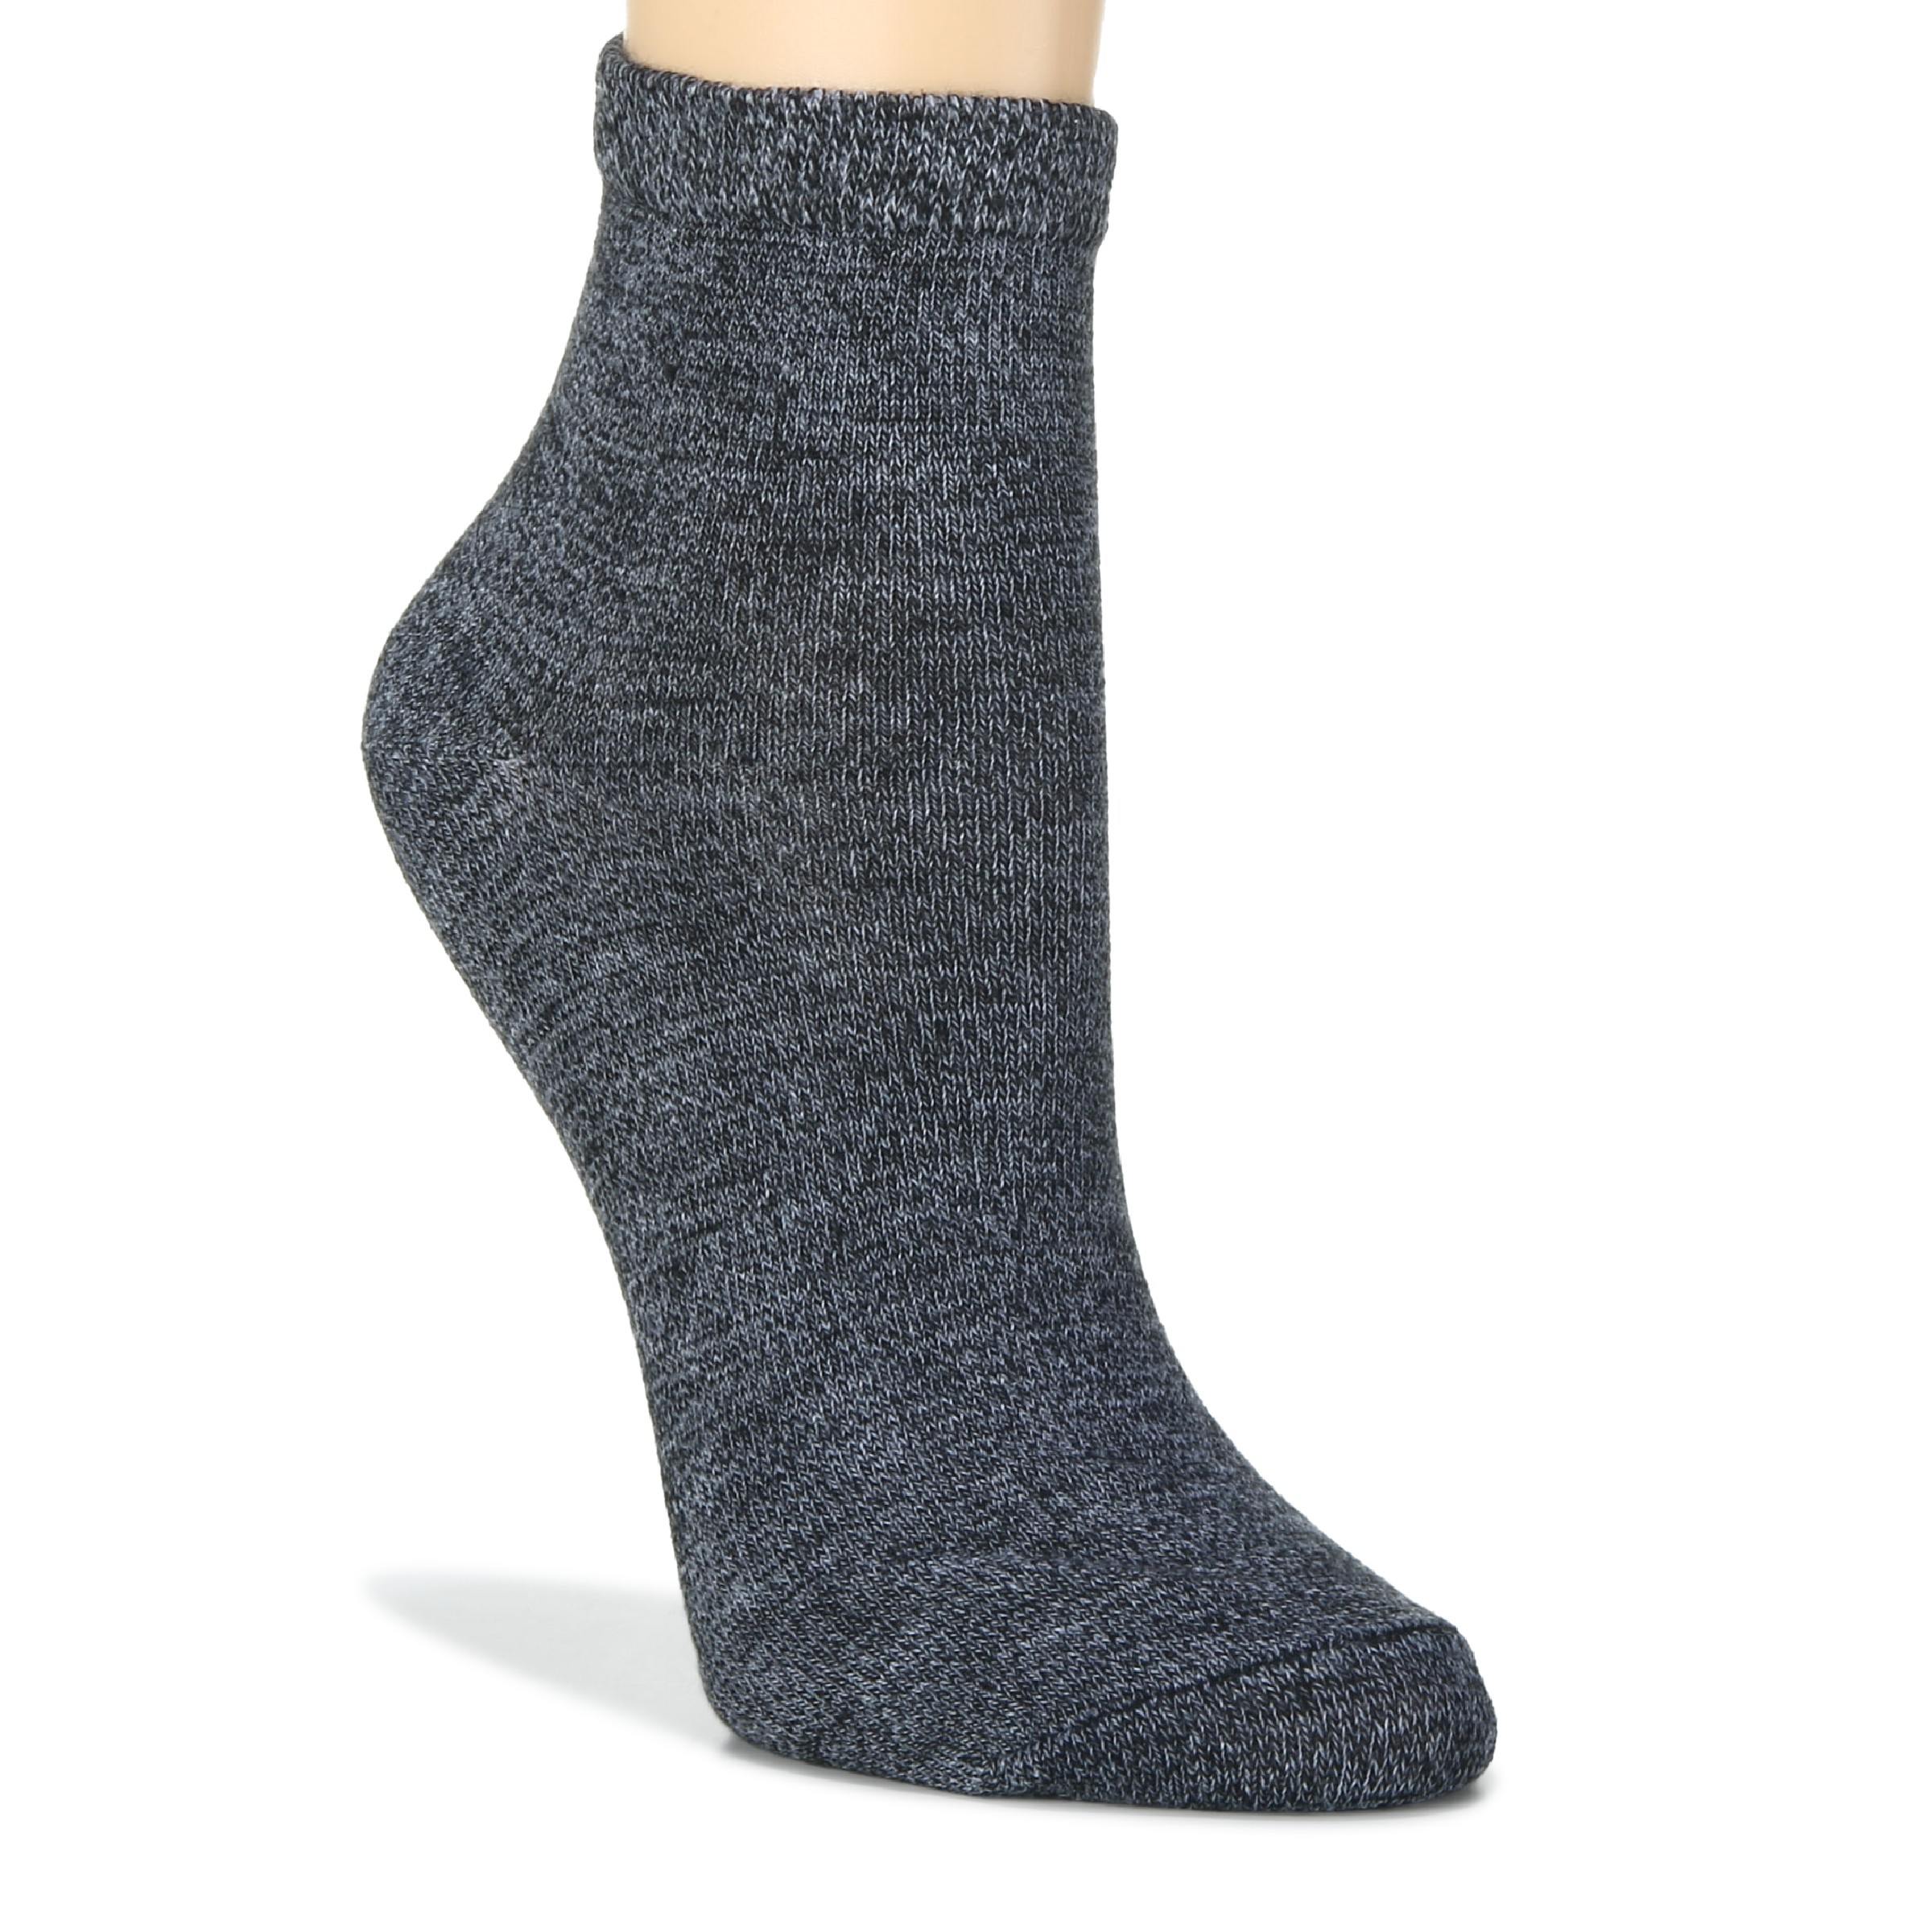 Women's 5 Pack Ankle Socks